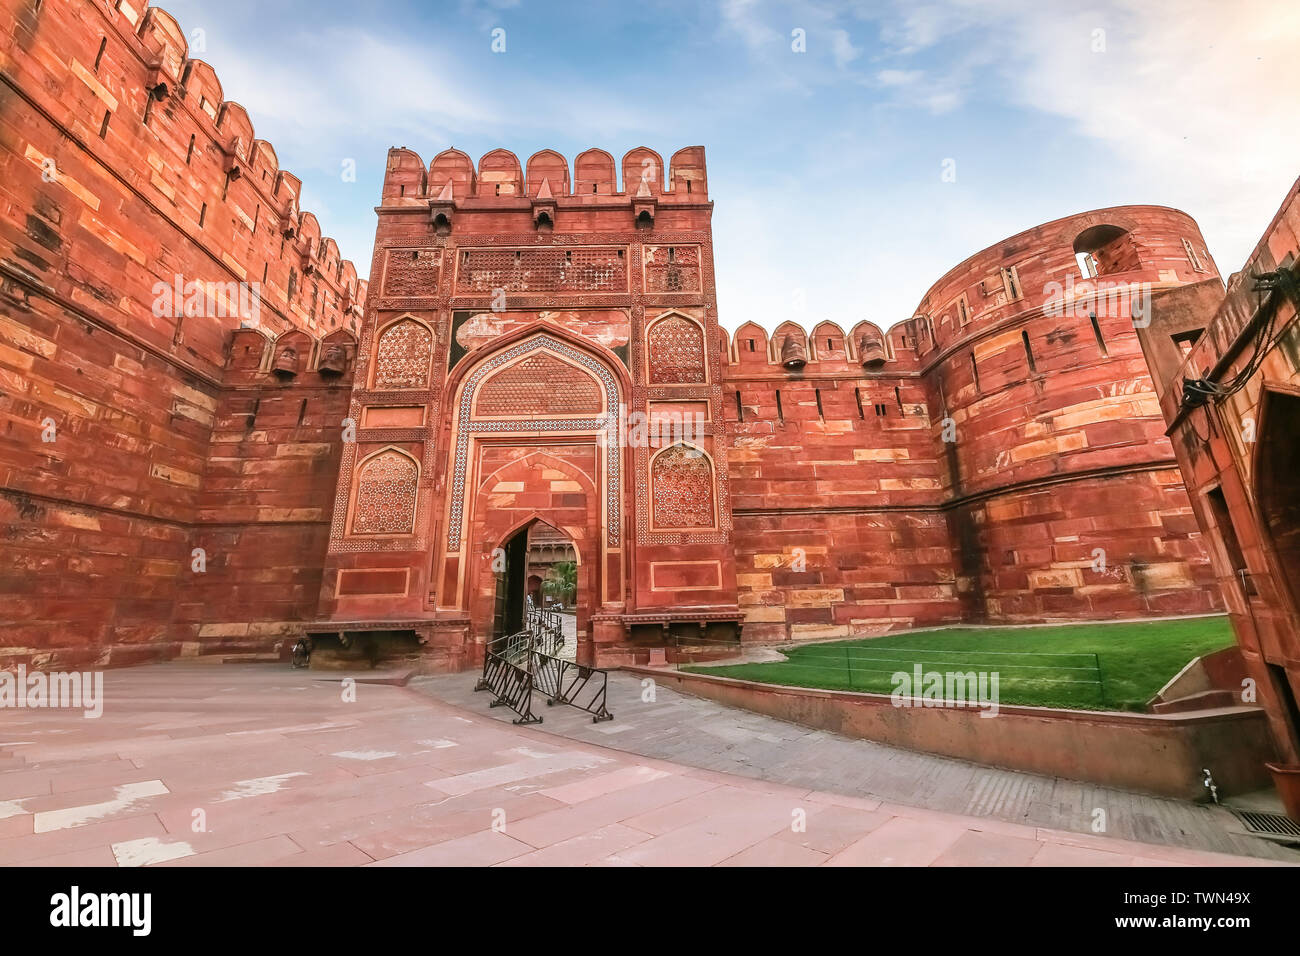 Agra Fort - Historische Mughal Architektur aus rotem Sandstein fort von mittelalterlichen Indien. Agra Fort ist ein UNESCO Weltkulturerbe in der Stadt Agra Indien. Stockfoto